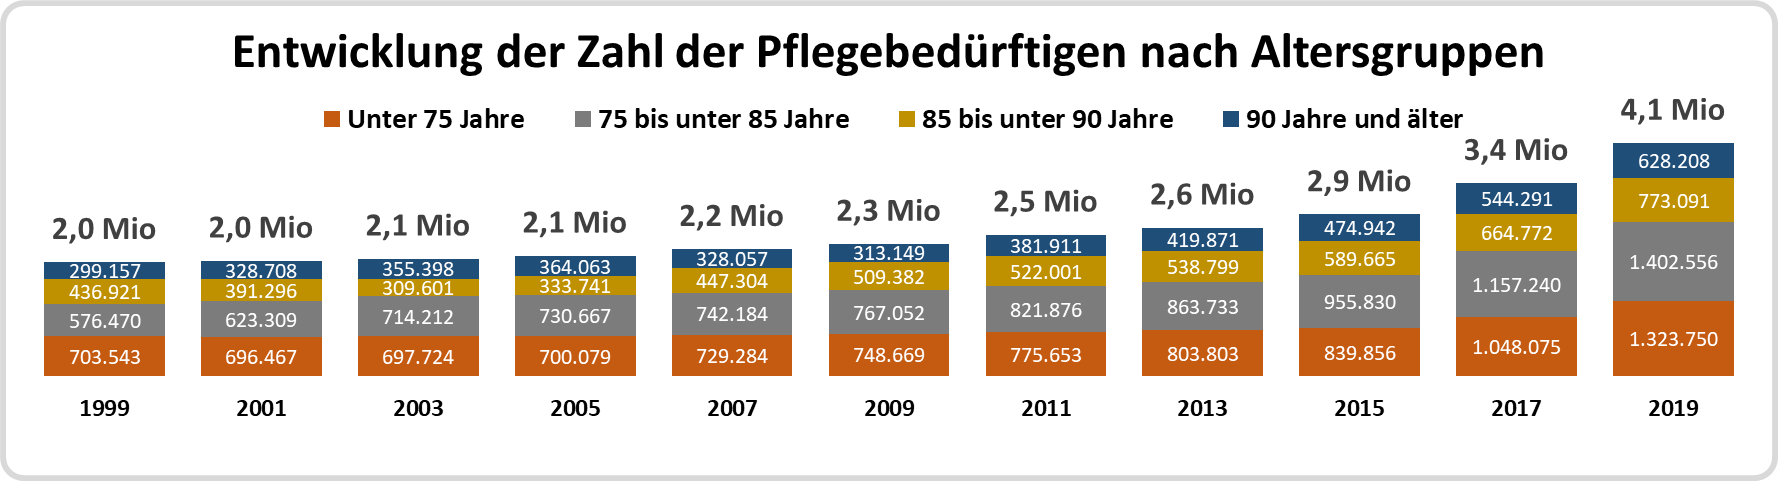 Säulendiagramm: Entwicklung der Zahl der pflegebedürftigen Menschen in Deutschland nach Altersgruppen